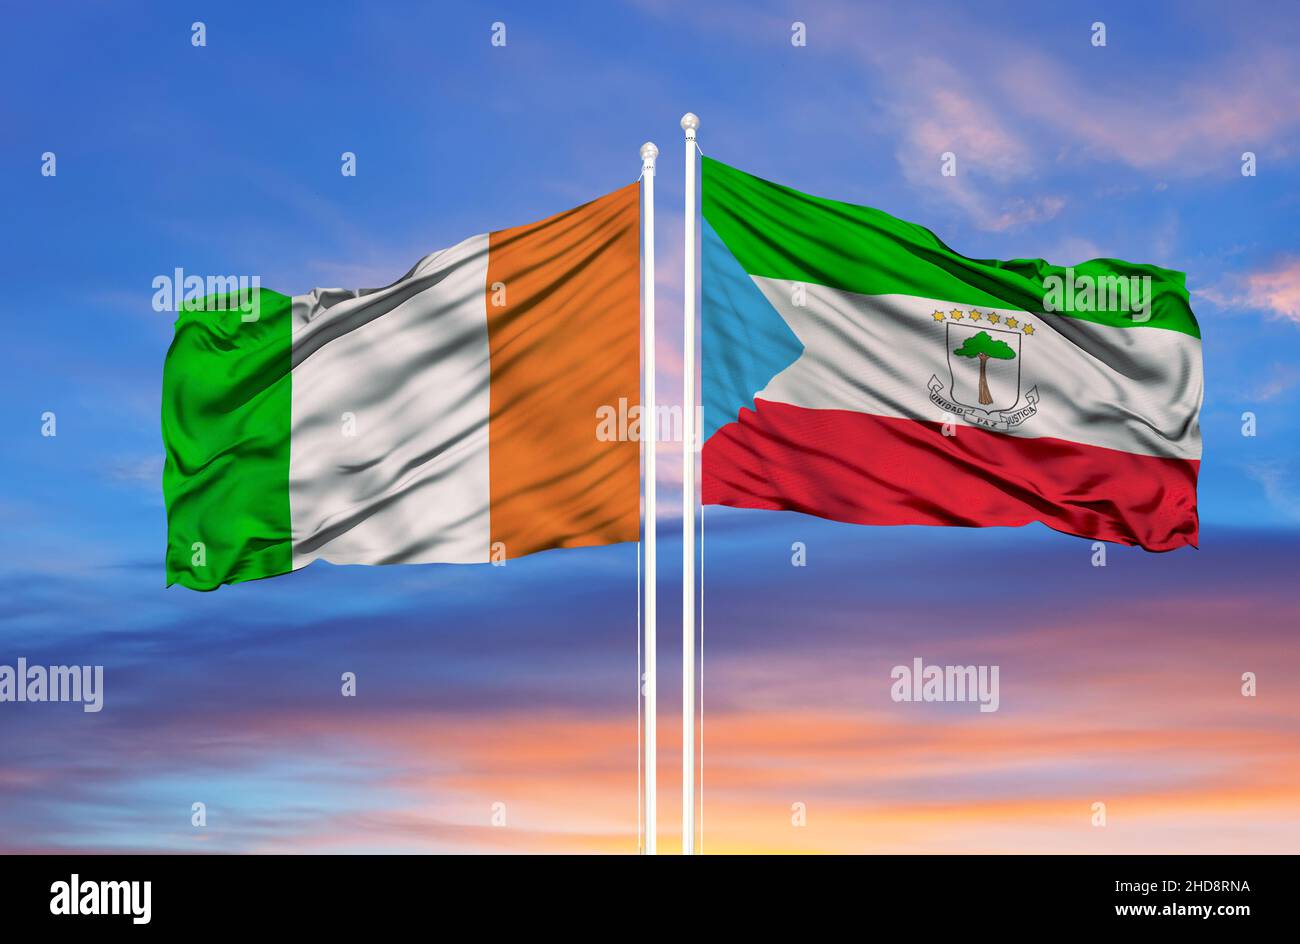 Drapeau Côte d' Ivoire - Ivoirien - Ivory Coast Flag -145 cm X 90